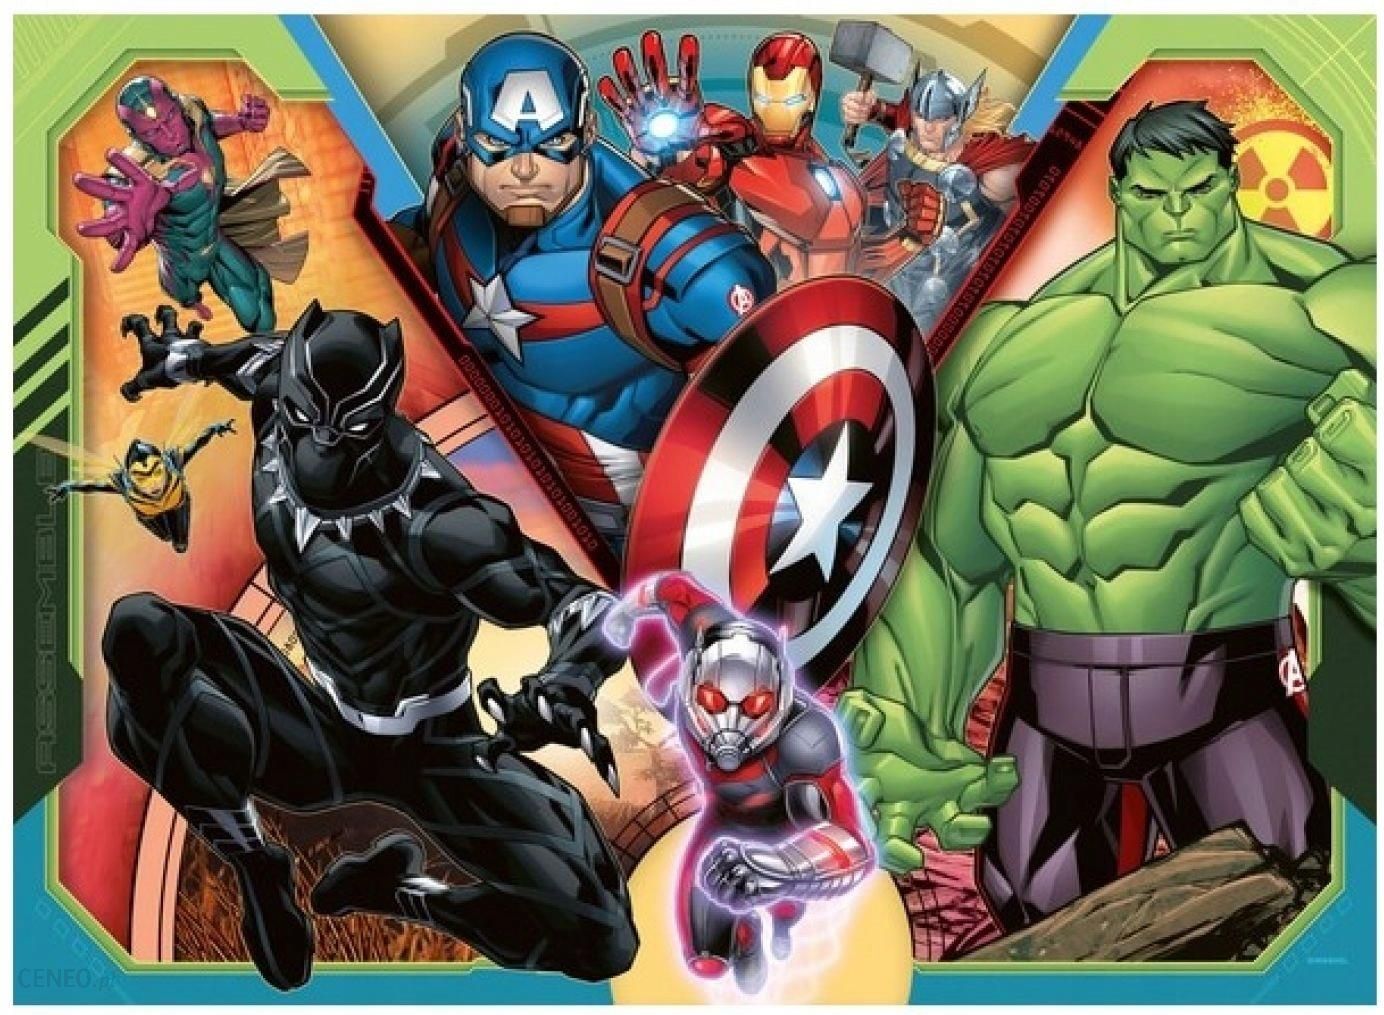 Marvel Super Hero Adventures! 24 PC Puzzle 10.3”x9.1” – The Odd Assortment